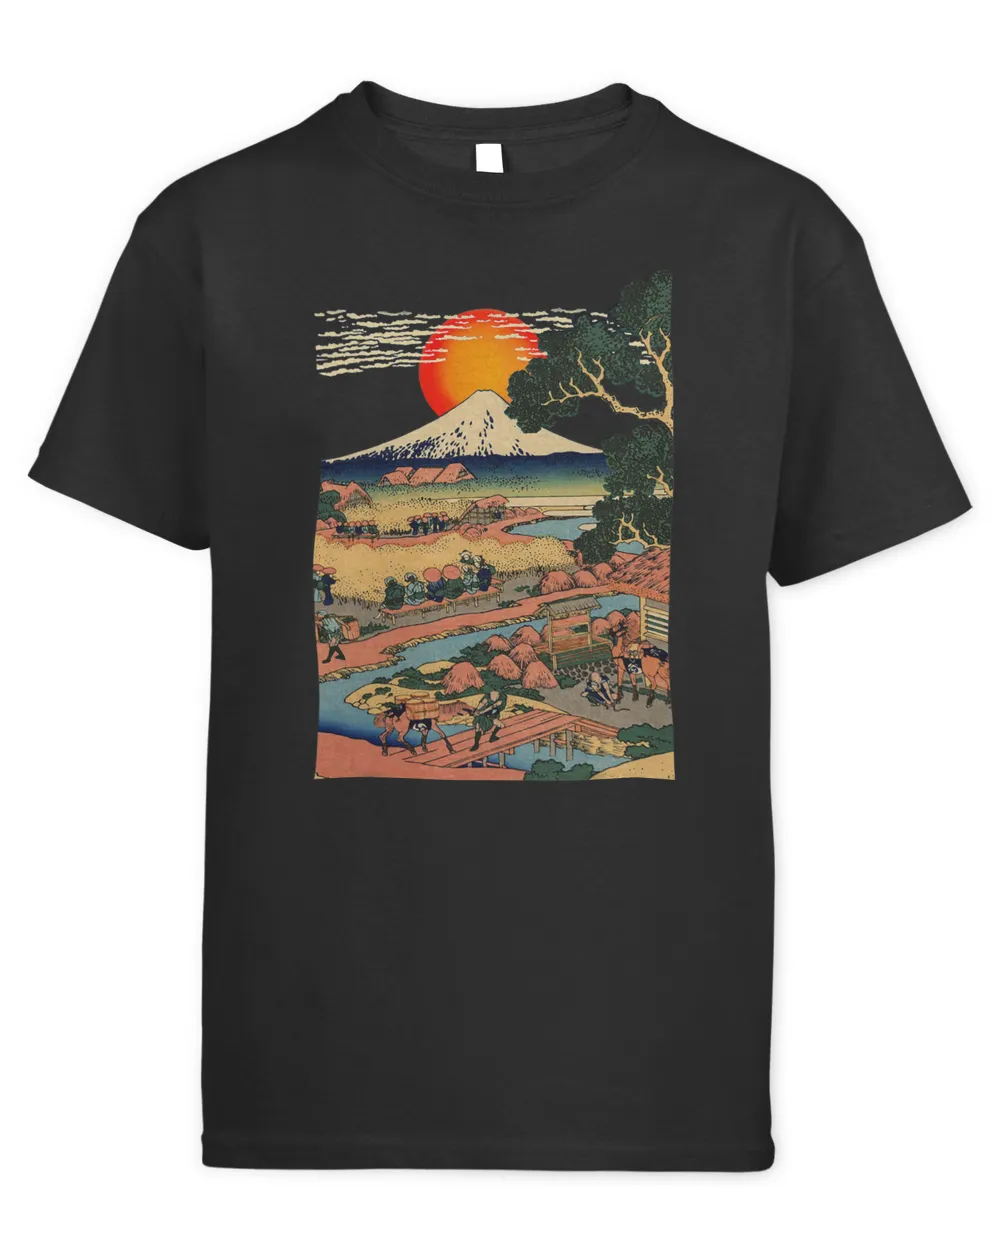 T Shirt Edo Japan Scenery Sunset at Mount Fuji Ukiyo